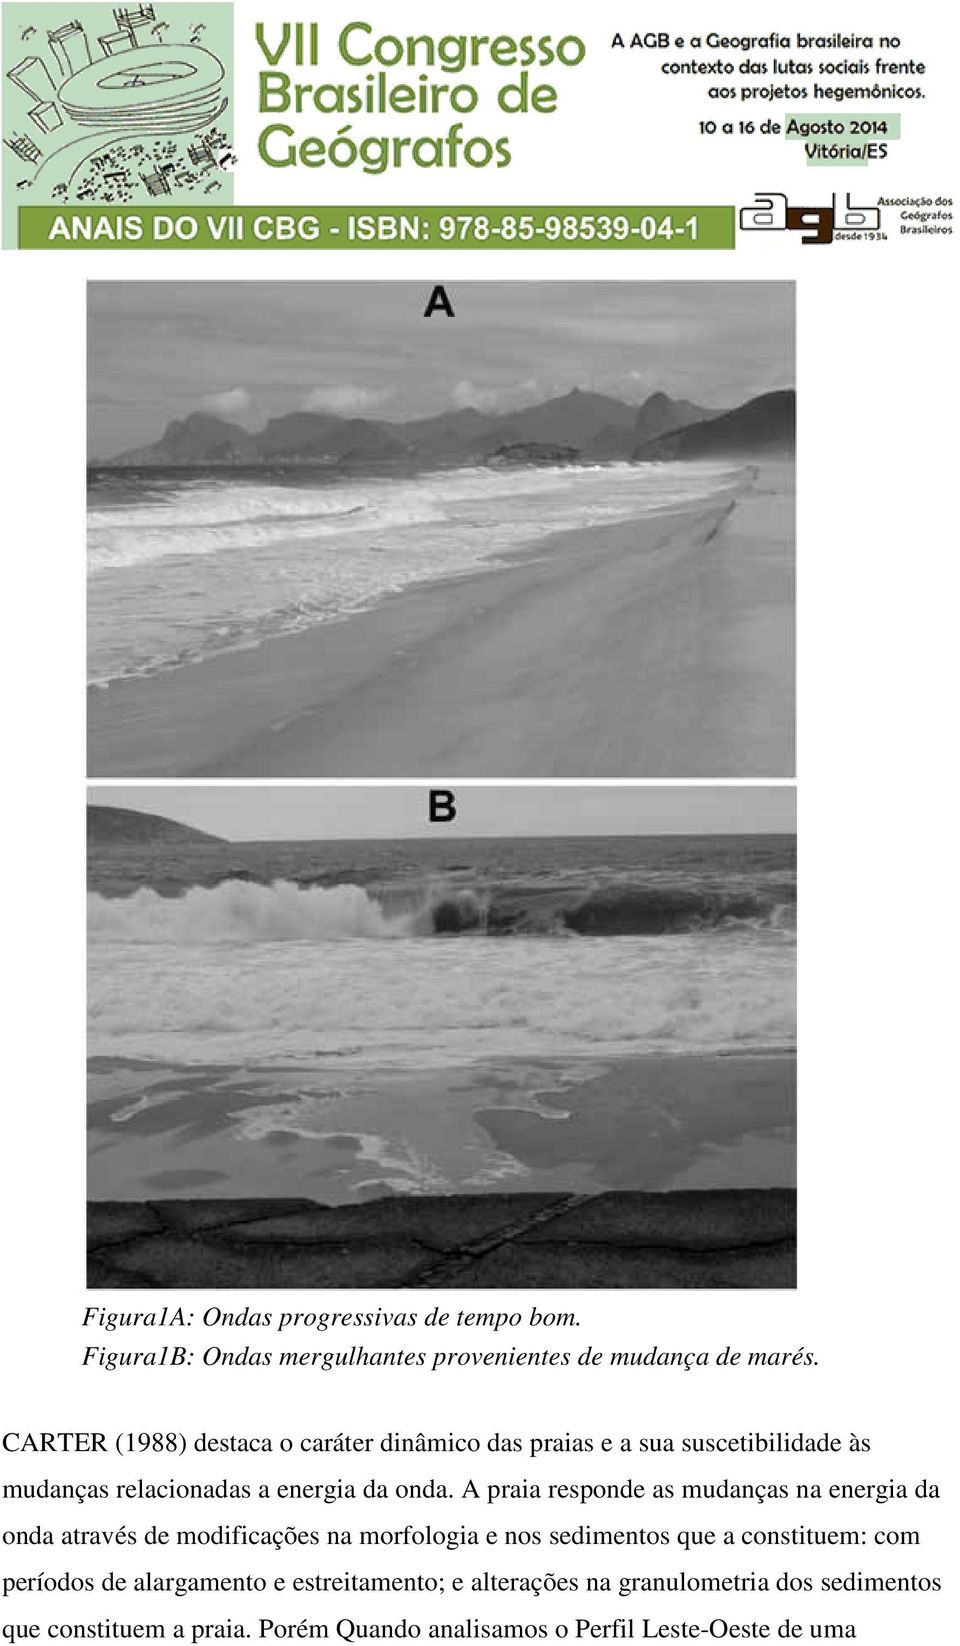 A praia responde as mudanças na energia da onda através de modificações na morfologia e nos sedimentos que a constituem: com